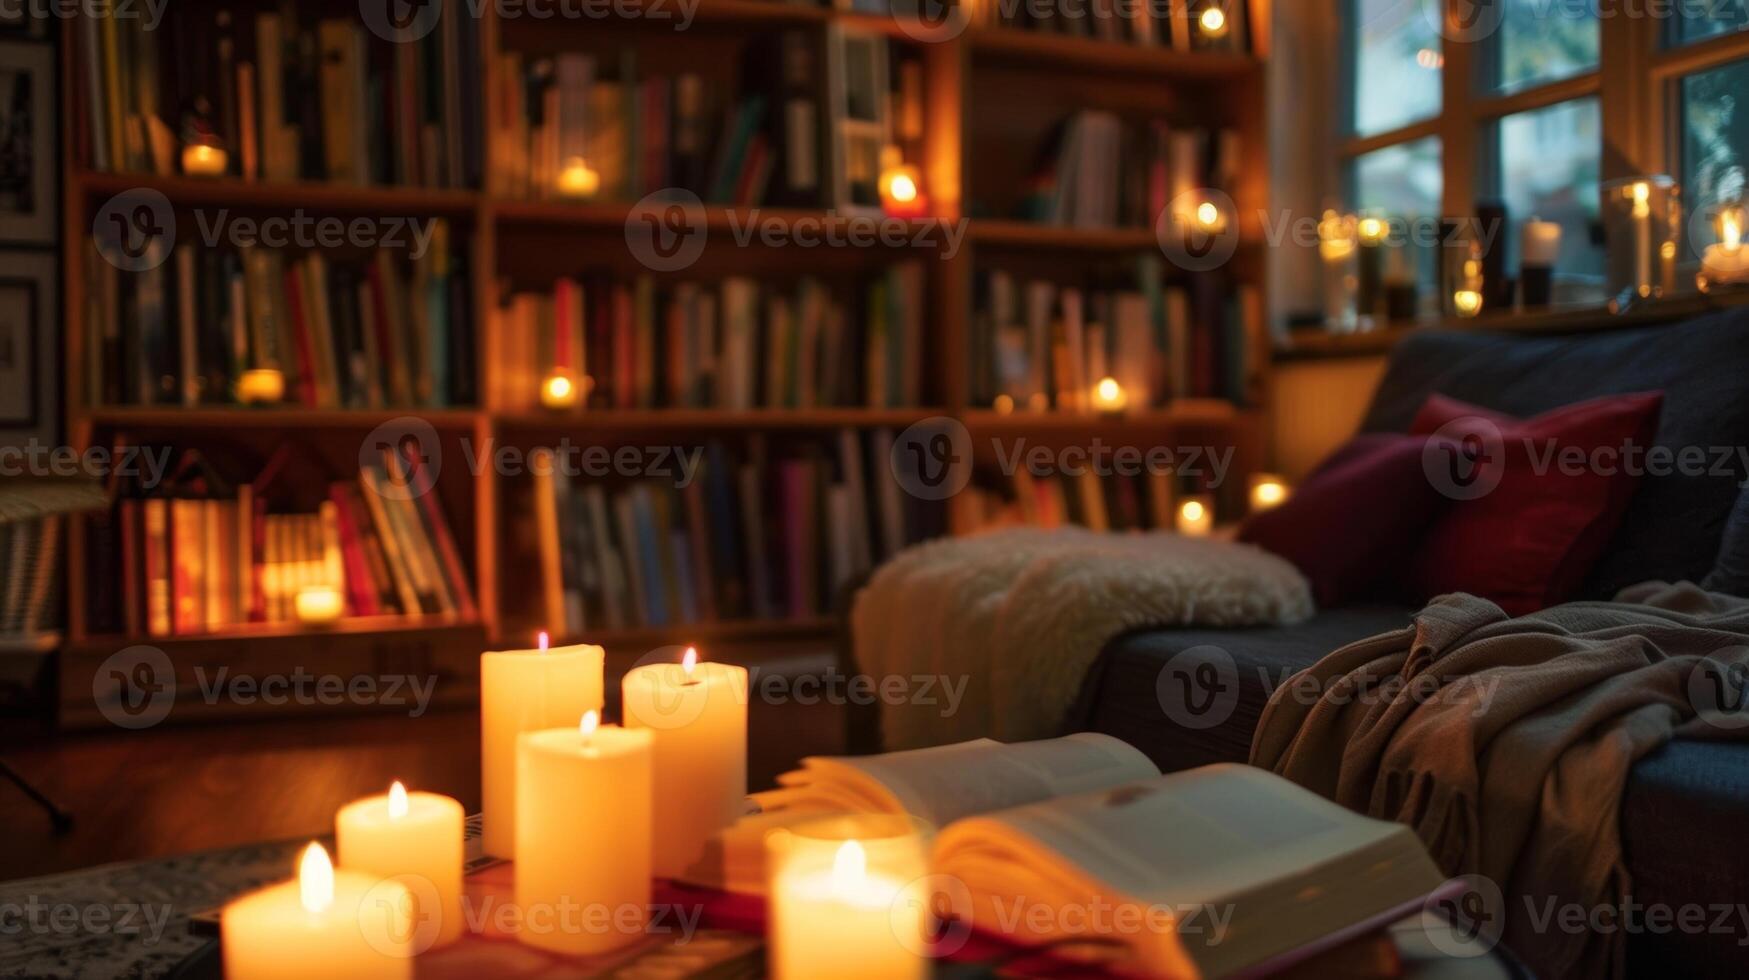 un piso a techo estante para libros proporciona el fondo para un tranquilo leyendo rincón sus estantería forrado con velas de varios tamaños 2d plano dibujos animados foto